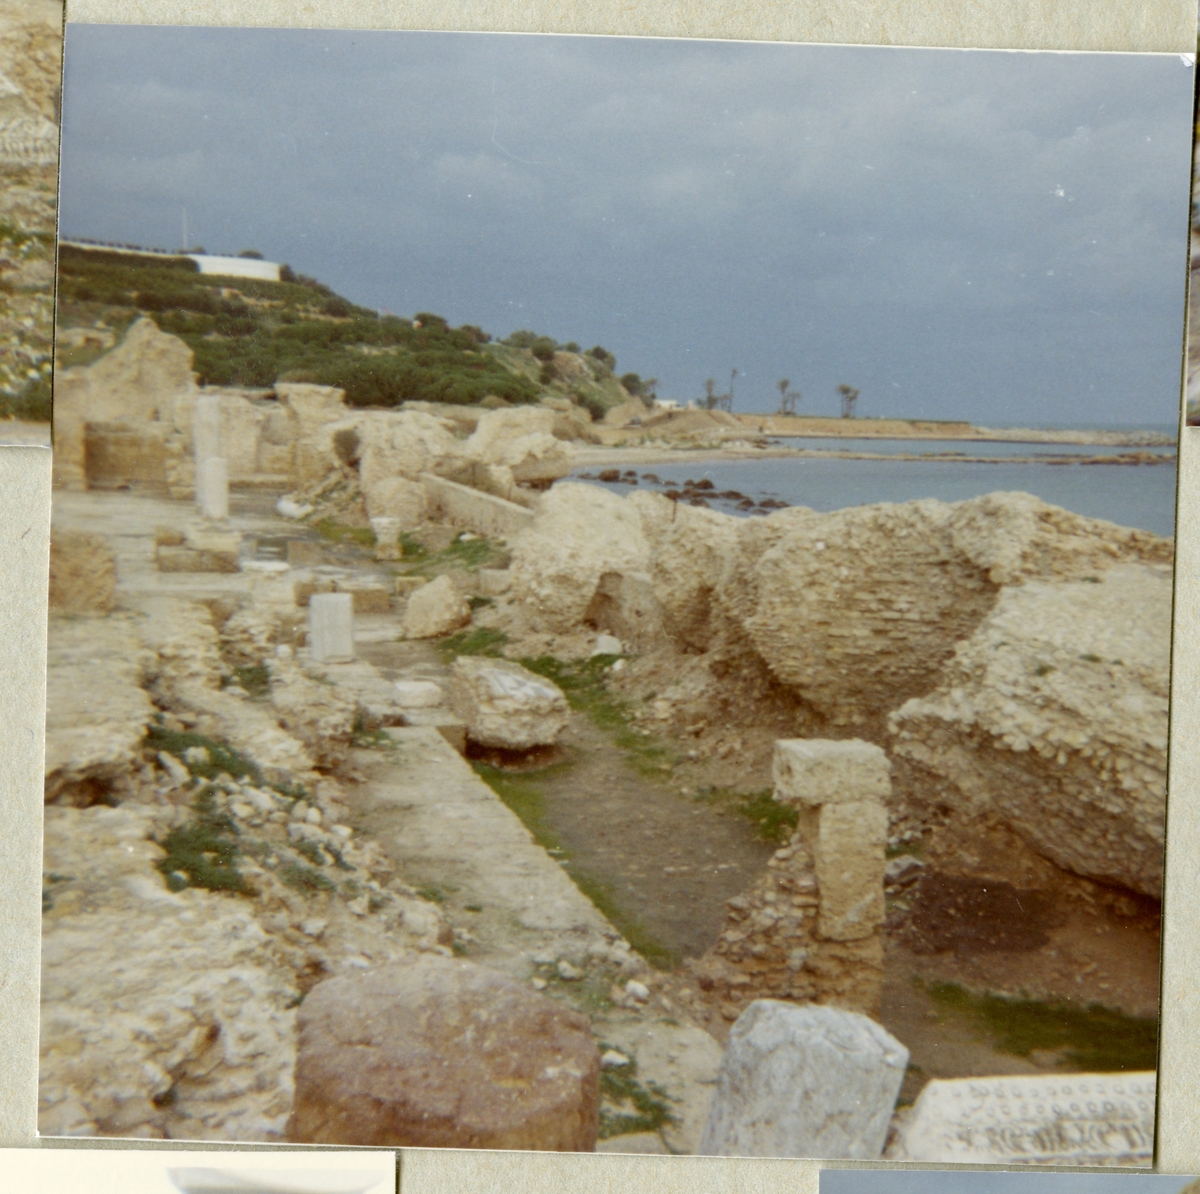 Bilden föreställer runinerna av Karthago och är tagen i samband med minfartyget Älvsnabbens långresa 1966-1967.